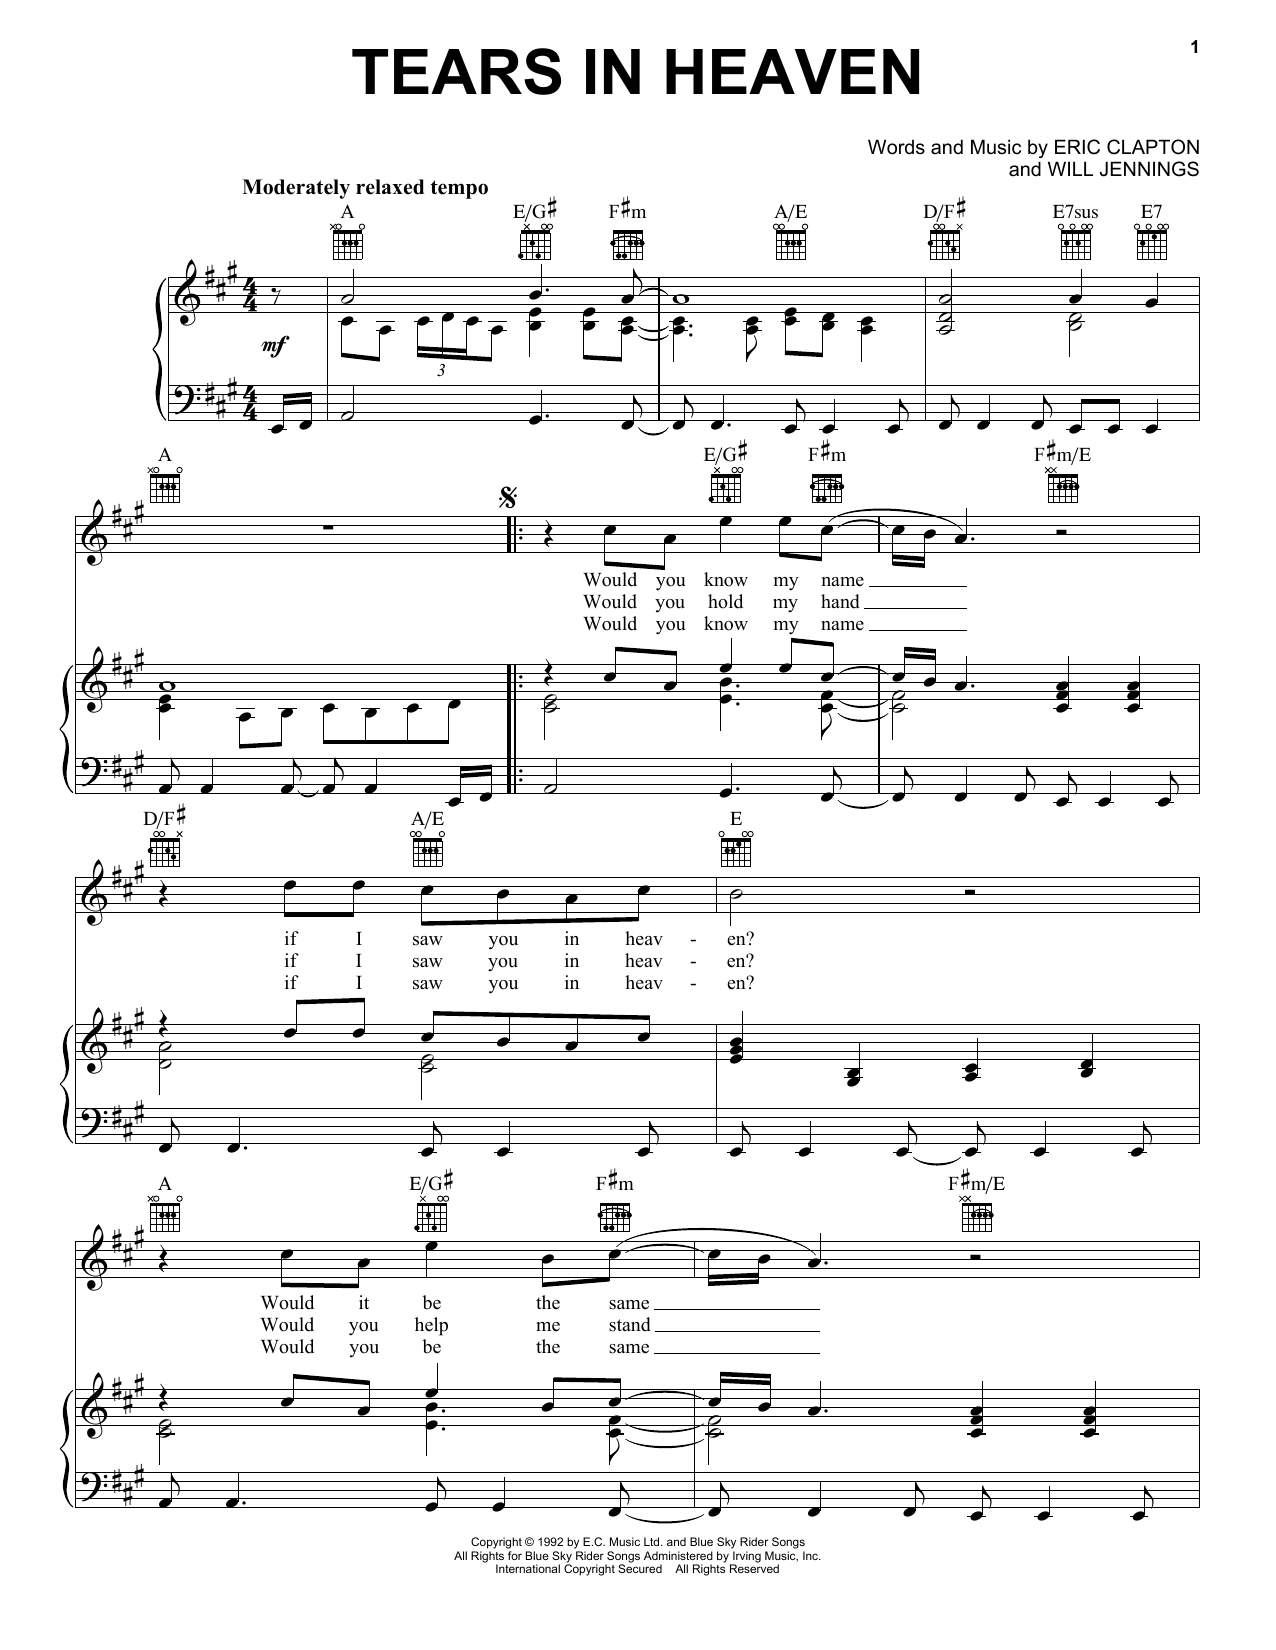 Tears in Heaven Tab by Eric Clapton (Guitar Pro) - Full Score